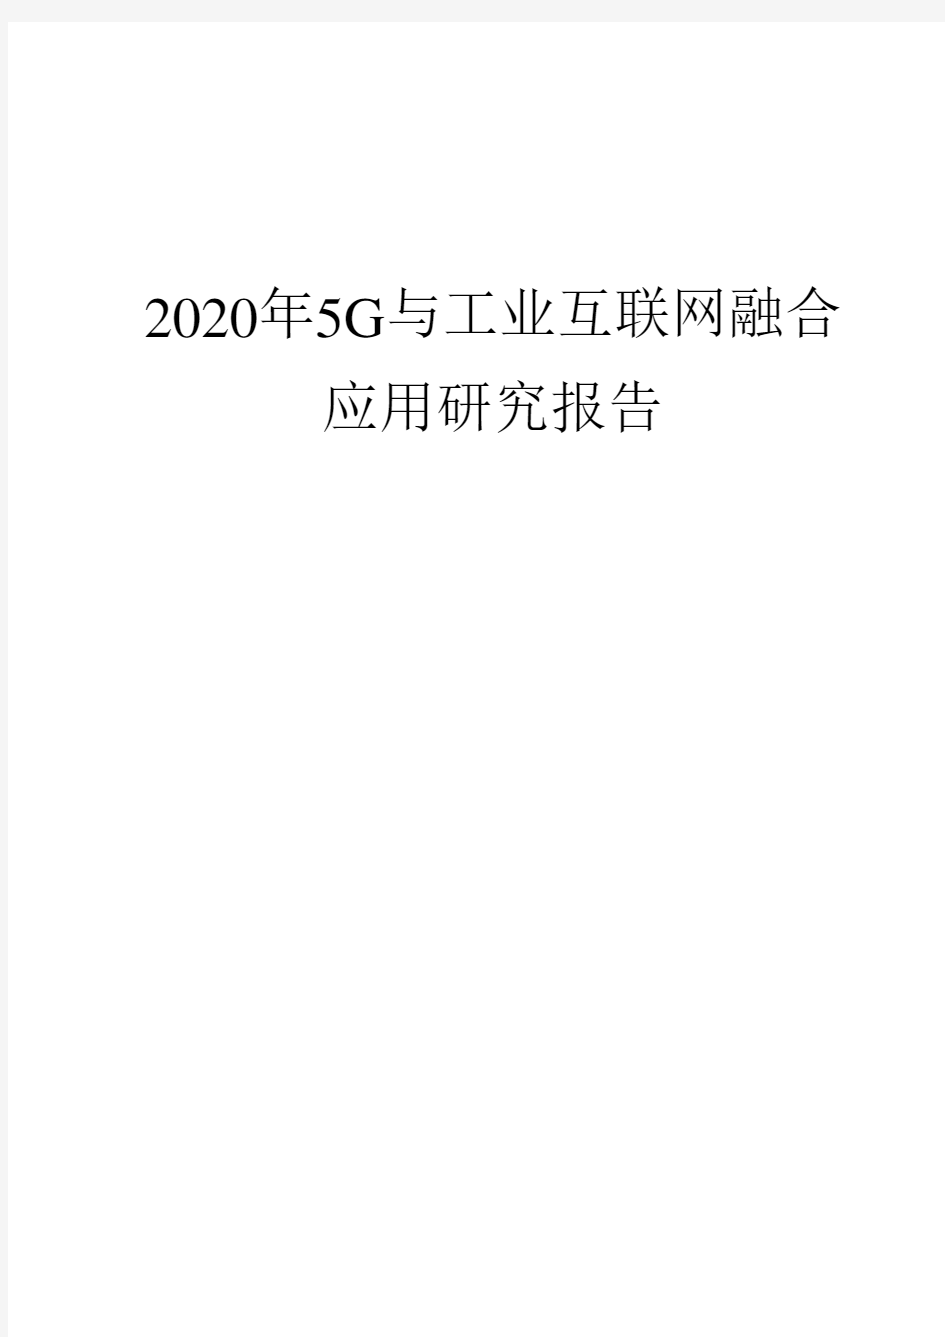 2020年5G与工业互联网融合应用研究报告